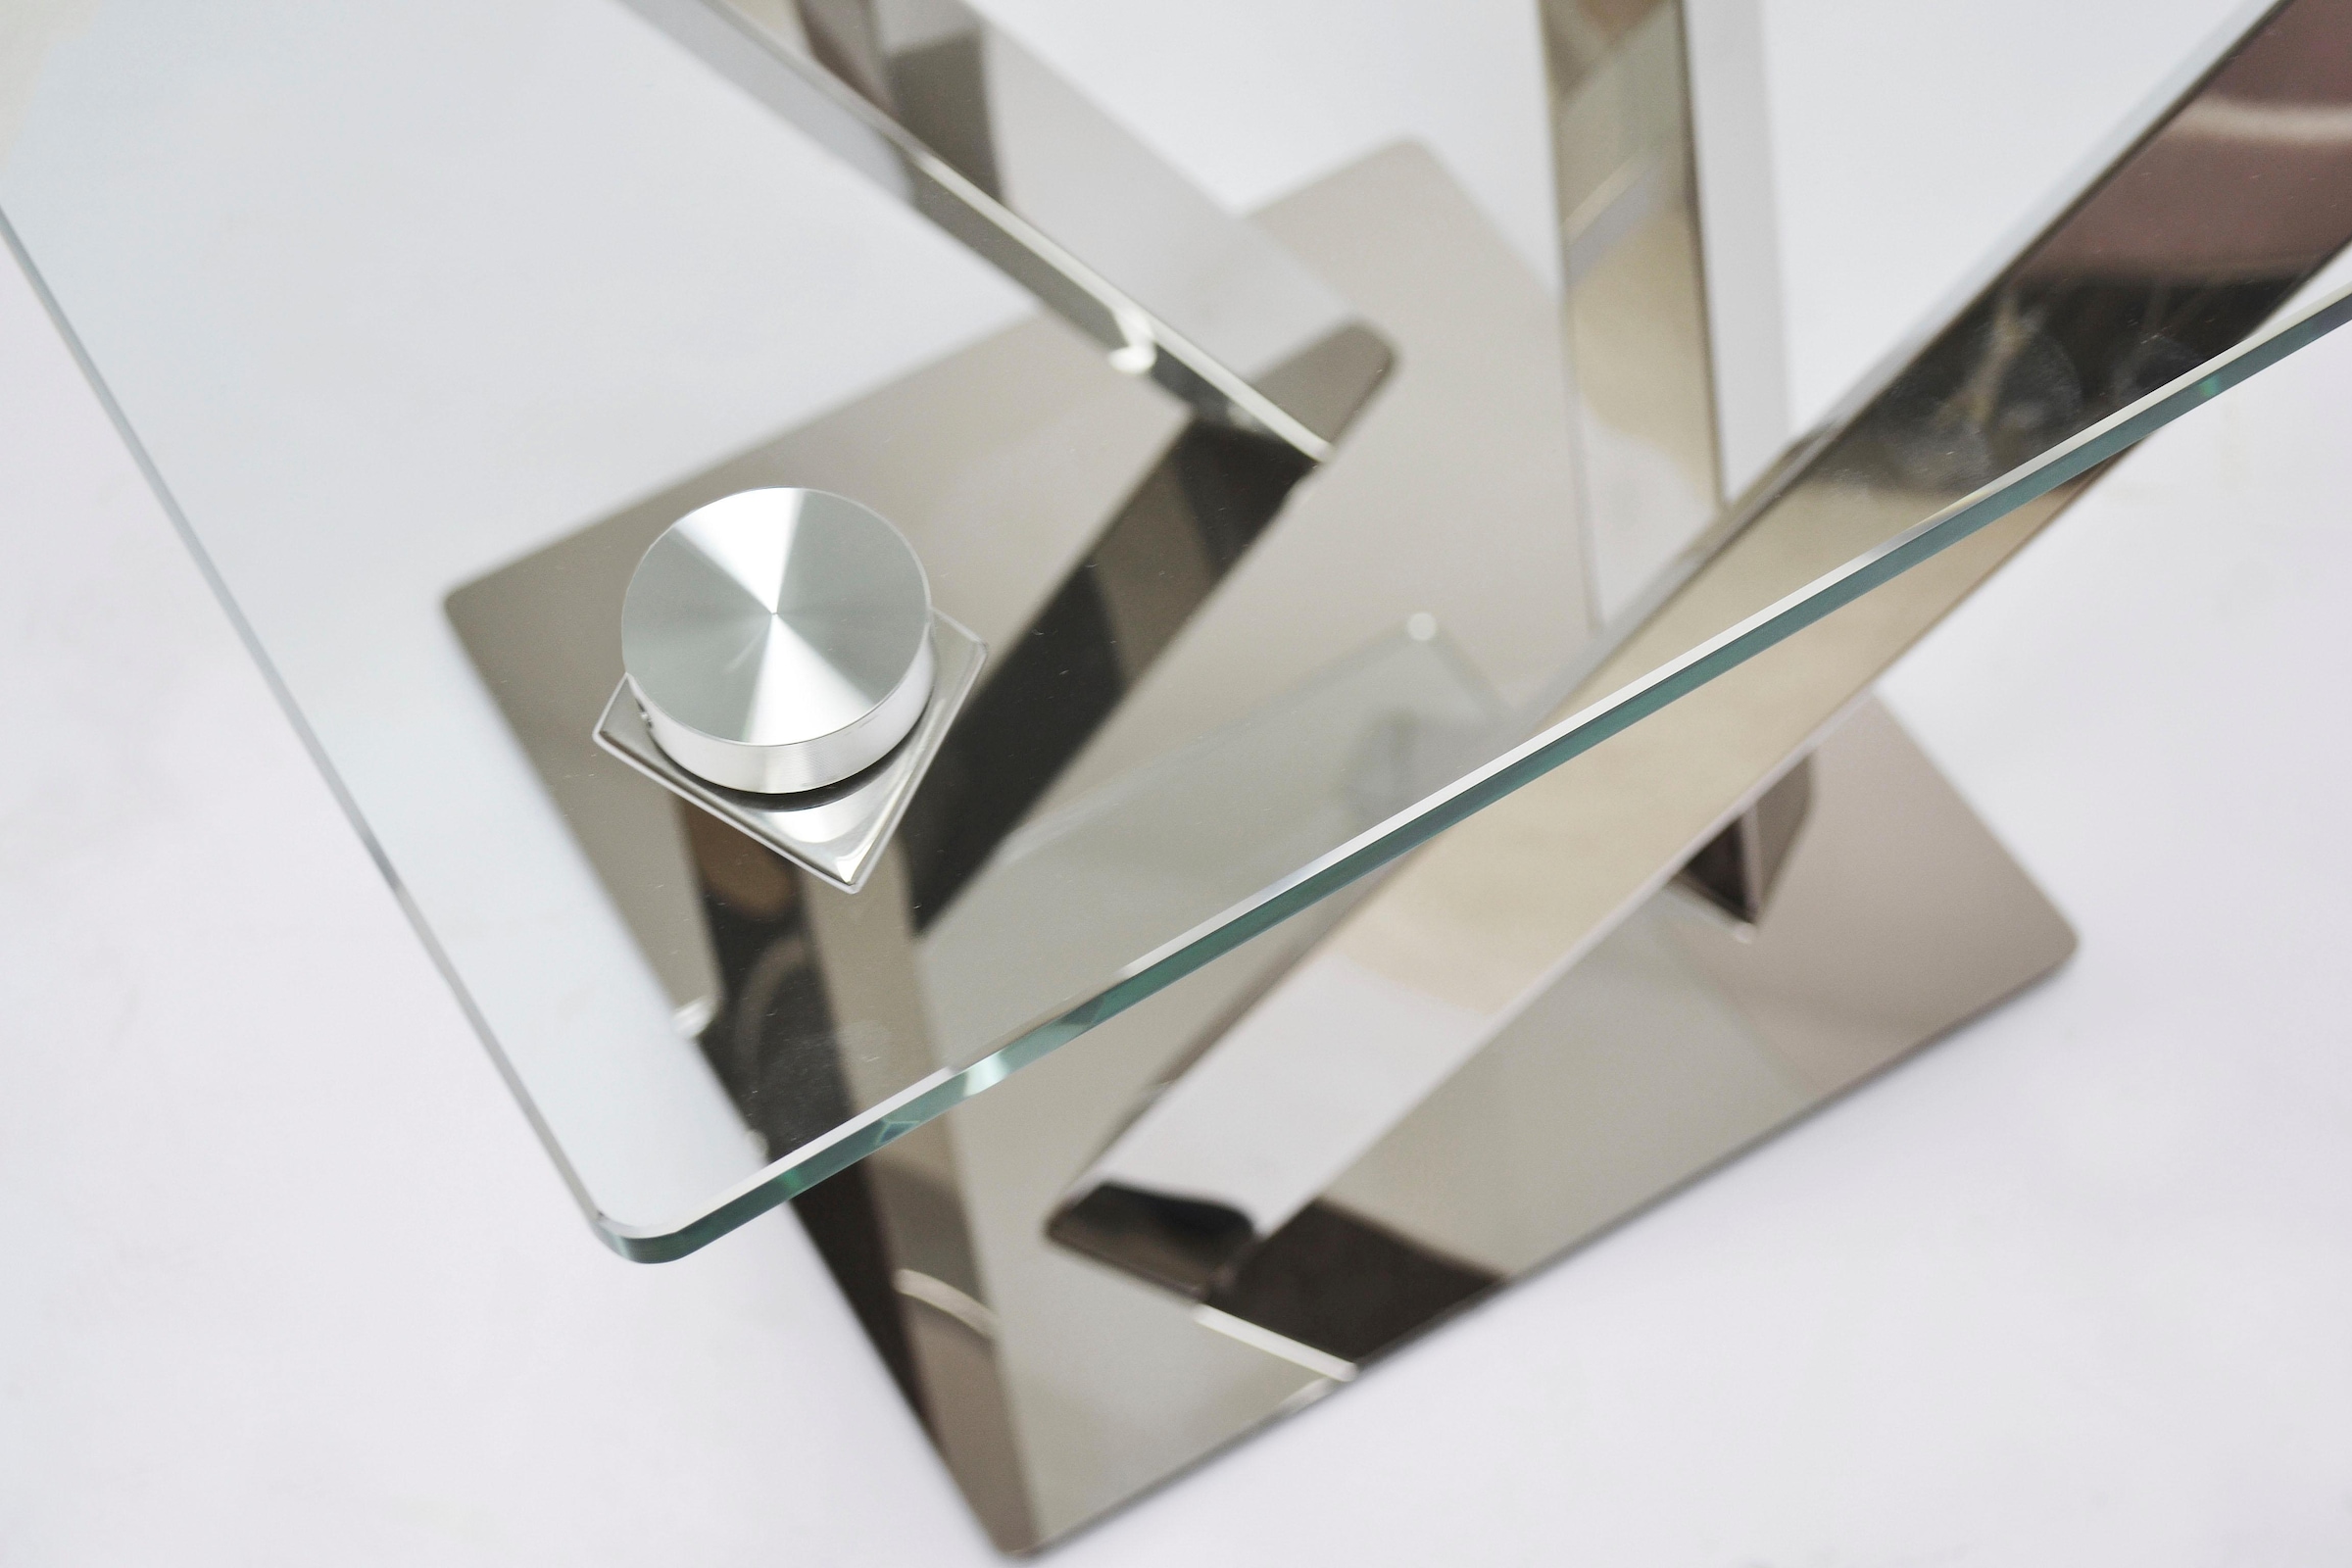 Leonique Beistelltisch »Micado«, mit strebenförmigem Chromgestell und schönder Glasplatte